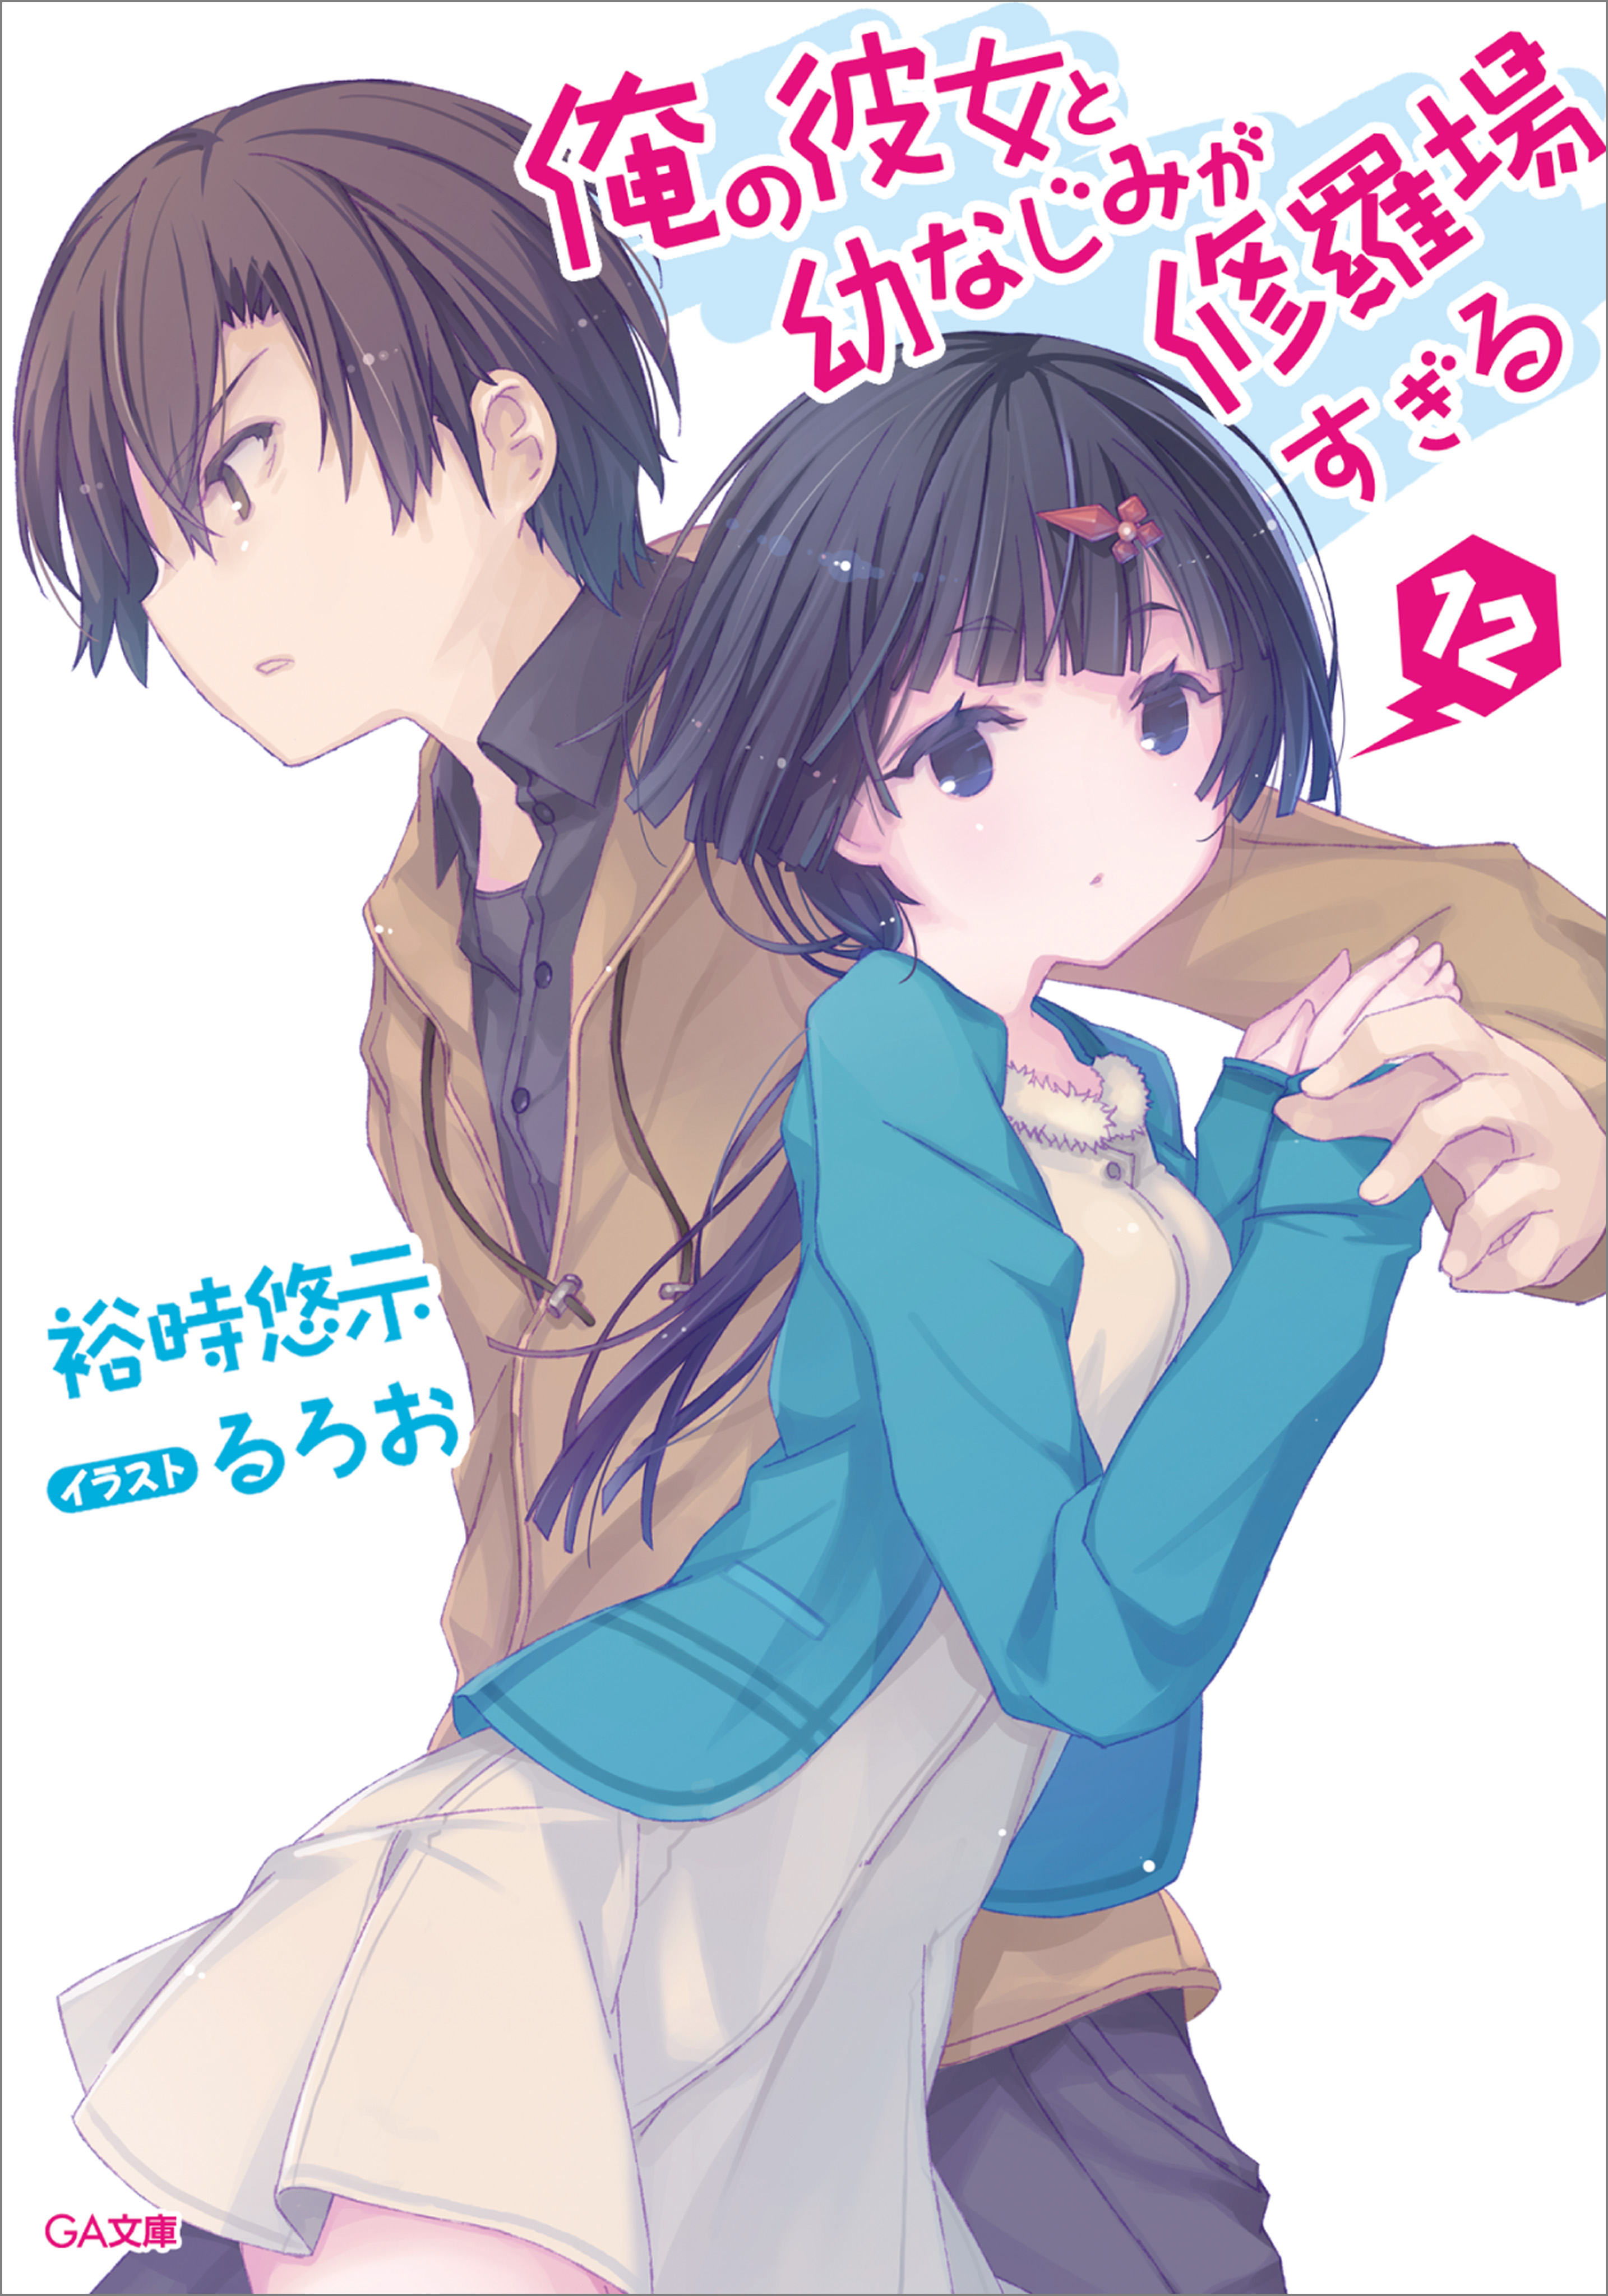 Read Ore No Kanojo To Osananajimi Ga Shuraba Sugiru 4-Koma Chapter 2 on  Mangakakalot